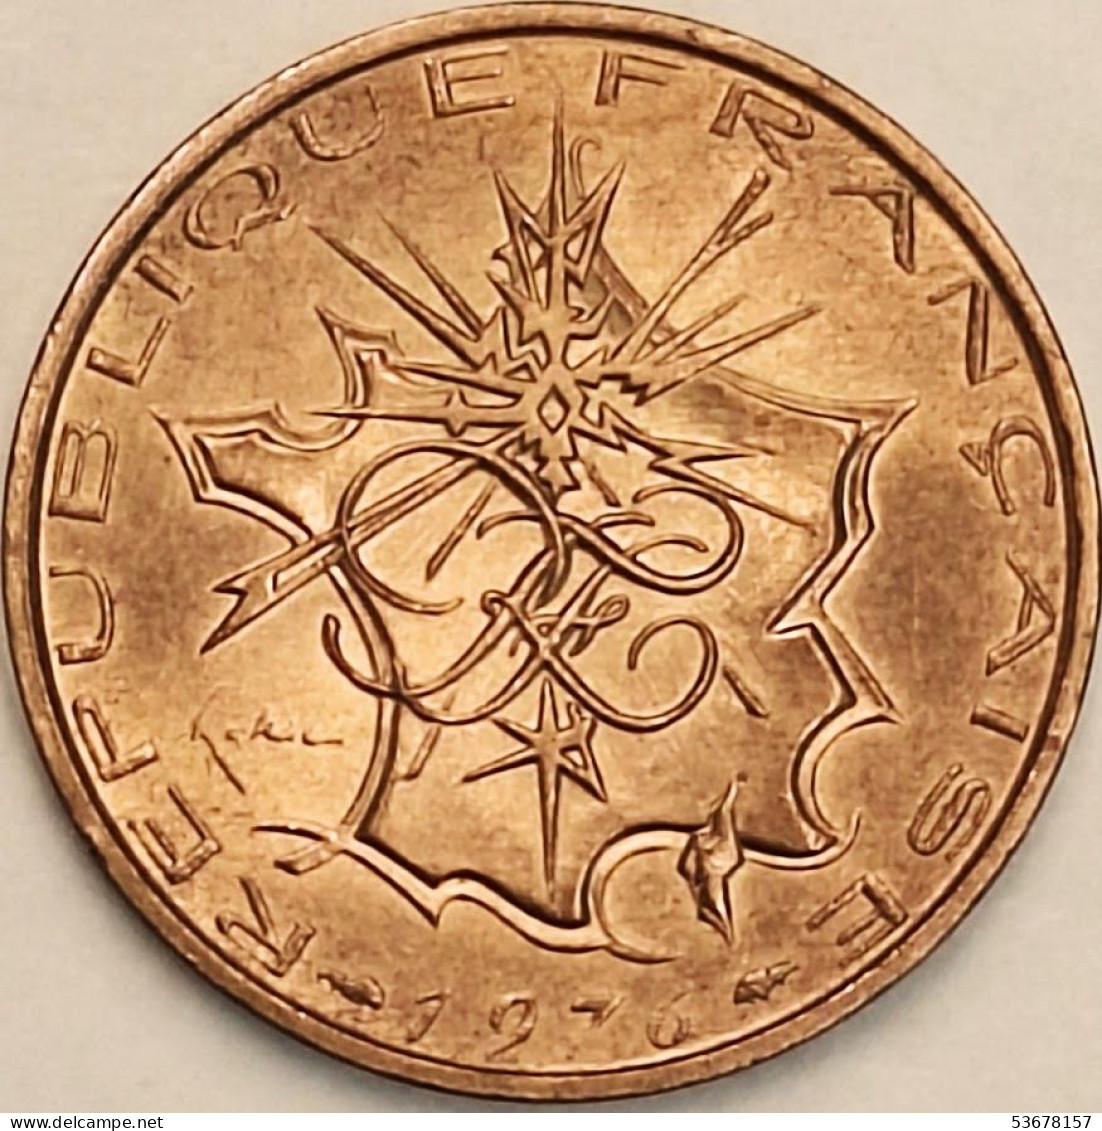 France - 10 Francs 1976, KM# 940 (#4348) - 10 Francs